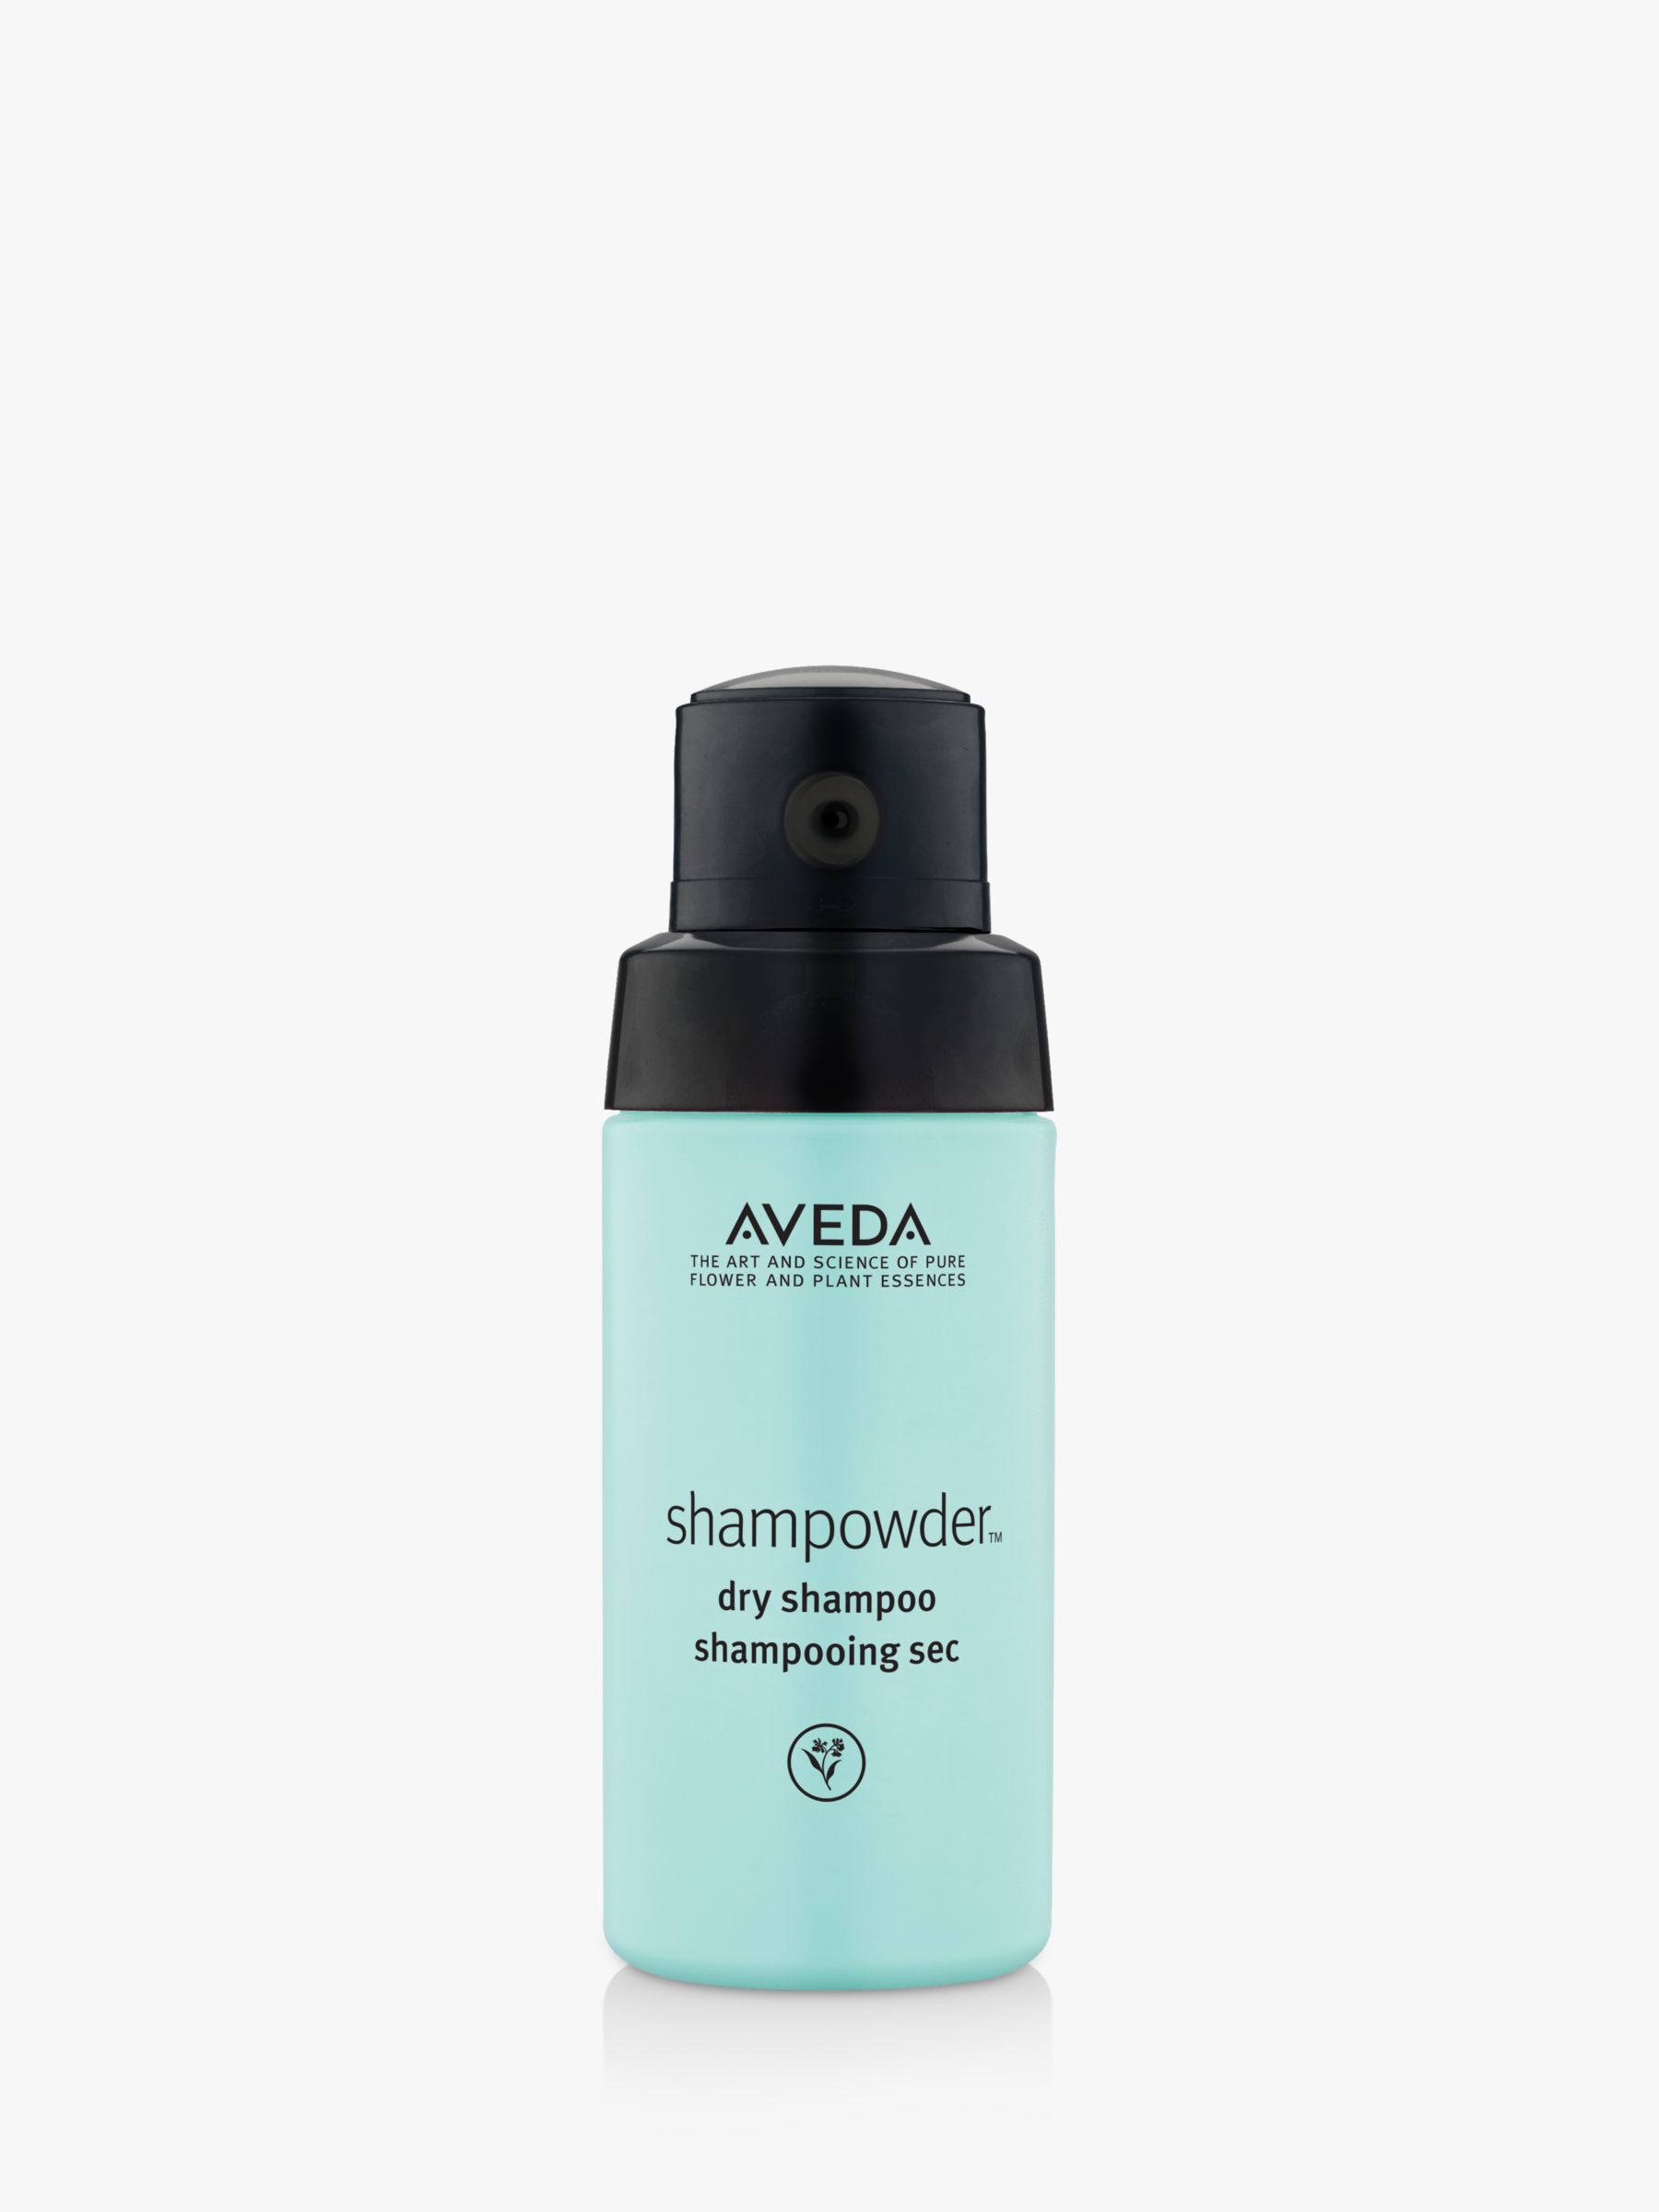 Aveda Shampowder Dry Shampoo, 56g